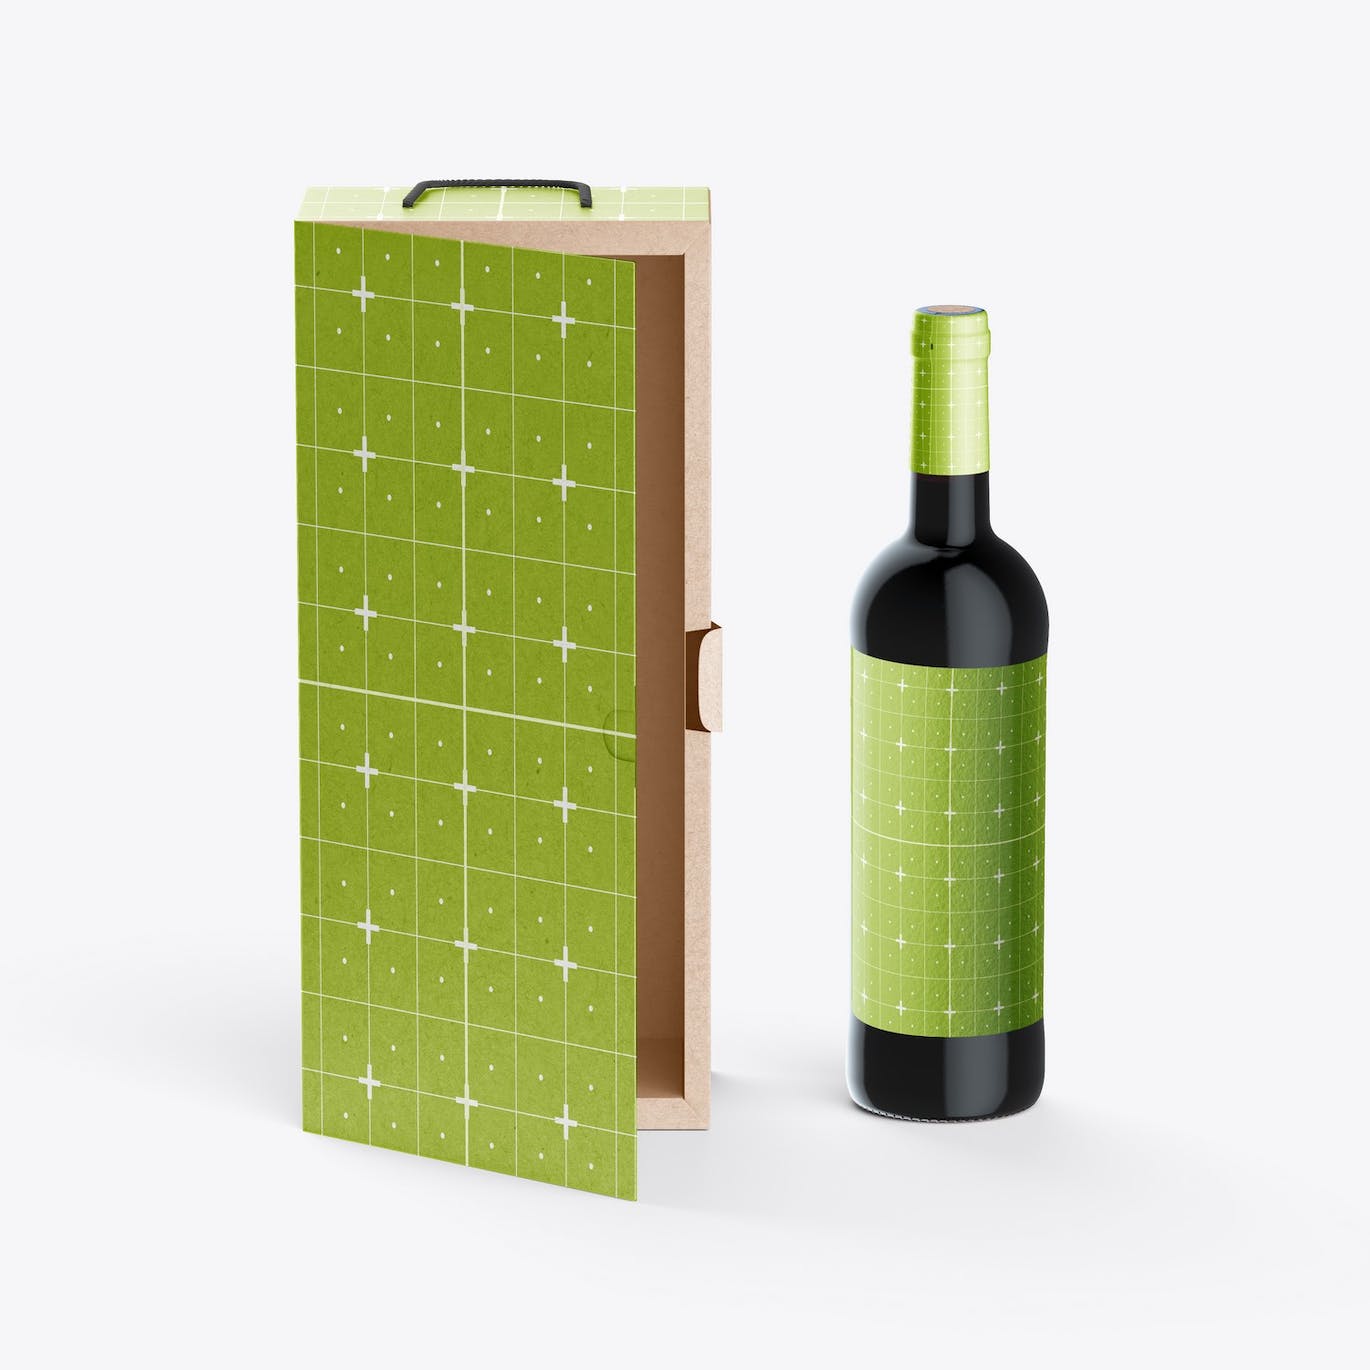 红酒酒瓶纸礼盒品牌包装设计样机 Box with Wine Bottle Mockup 样机素材 第9张